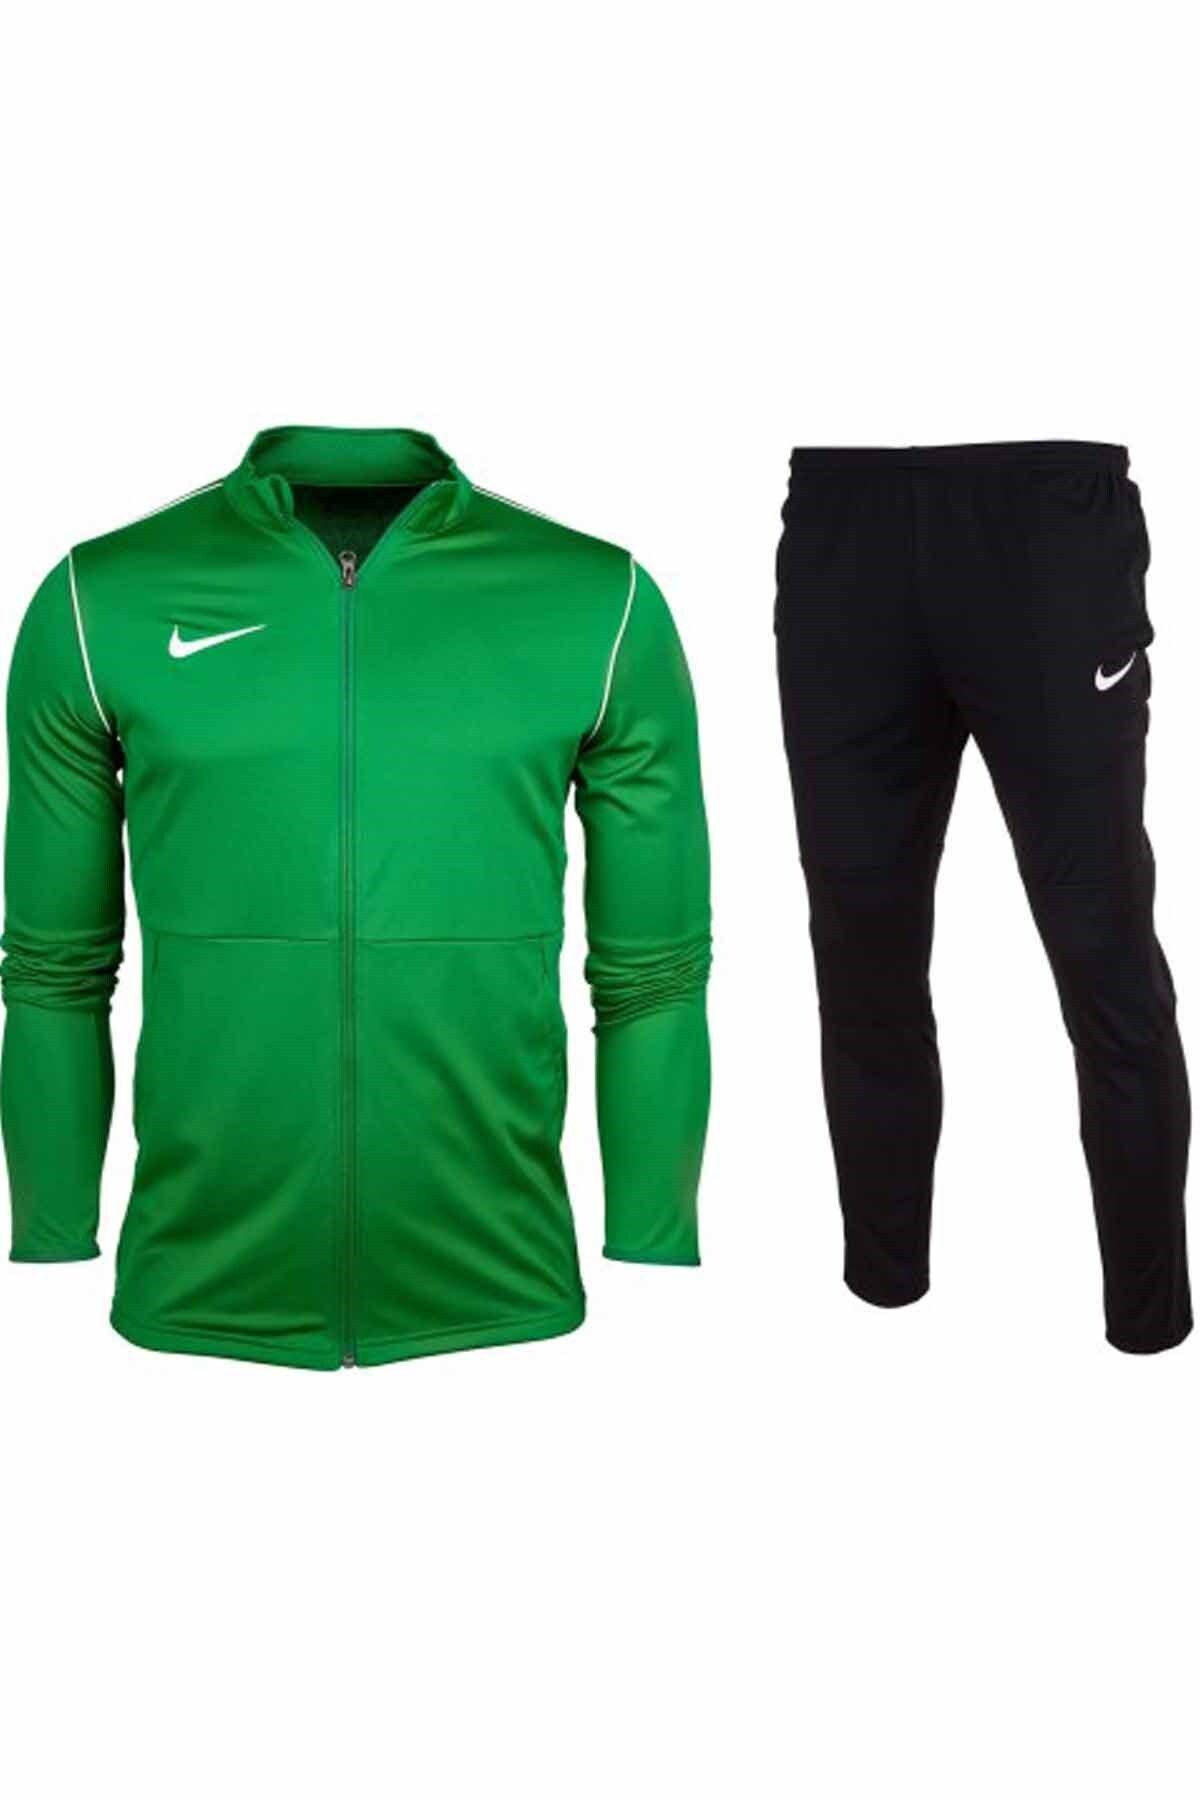 Nike Dry Park 20 B1 Erkek Eşofman Takım Nk6885-302-yeşil